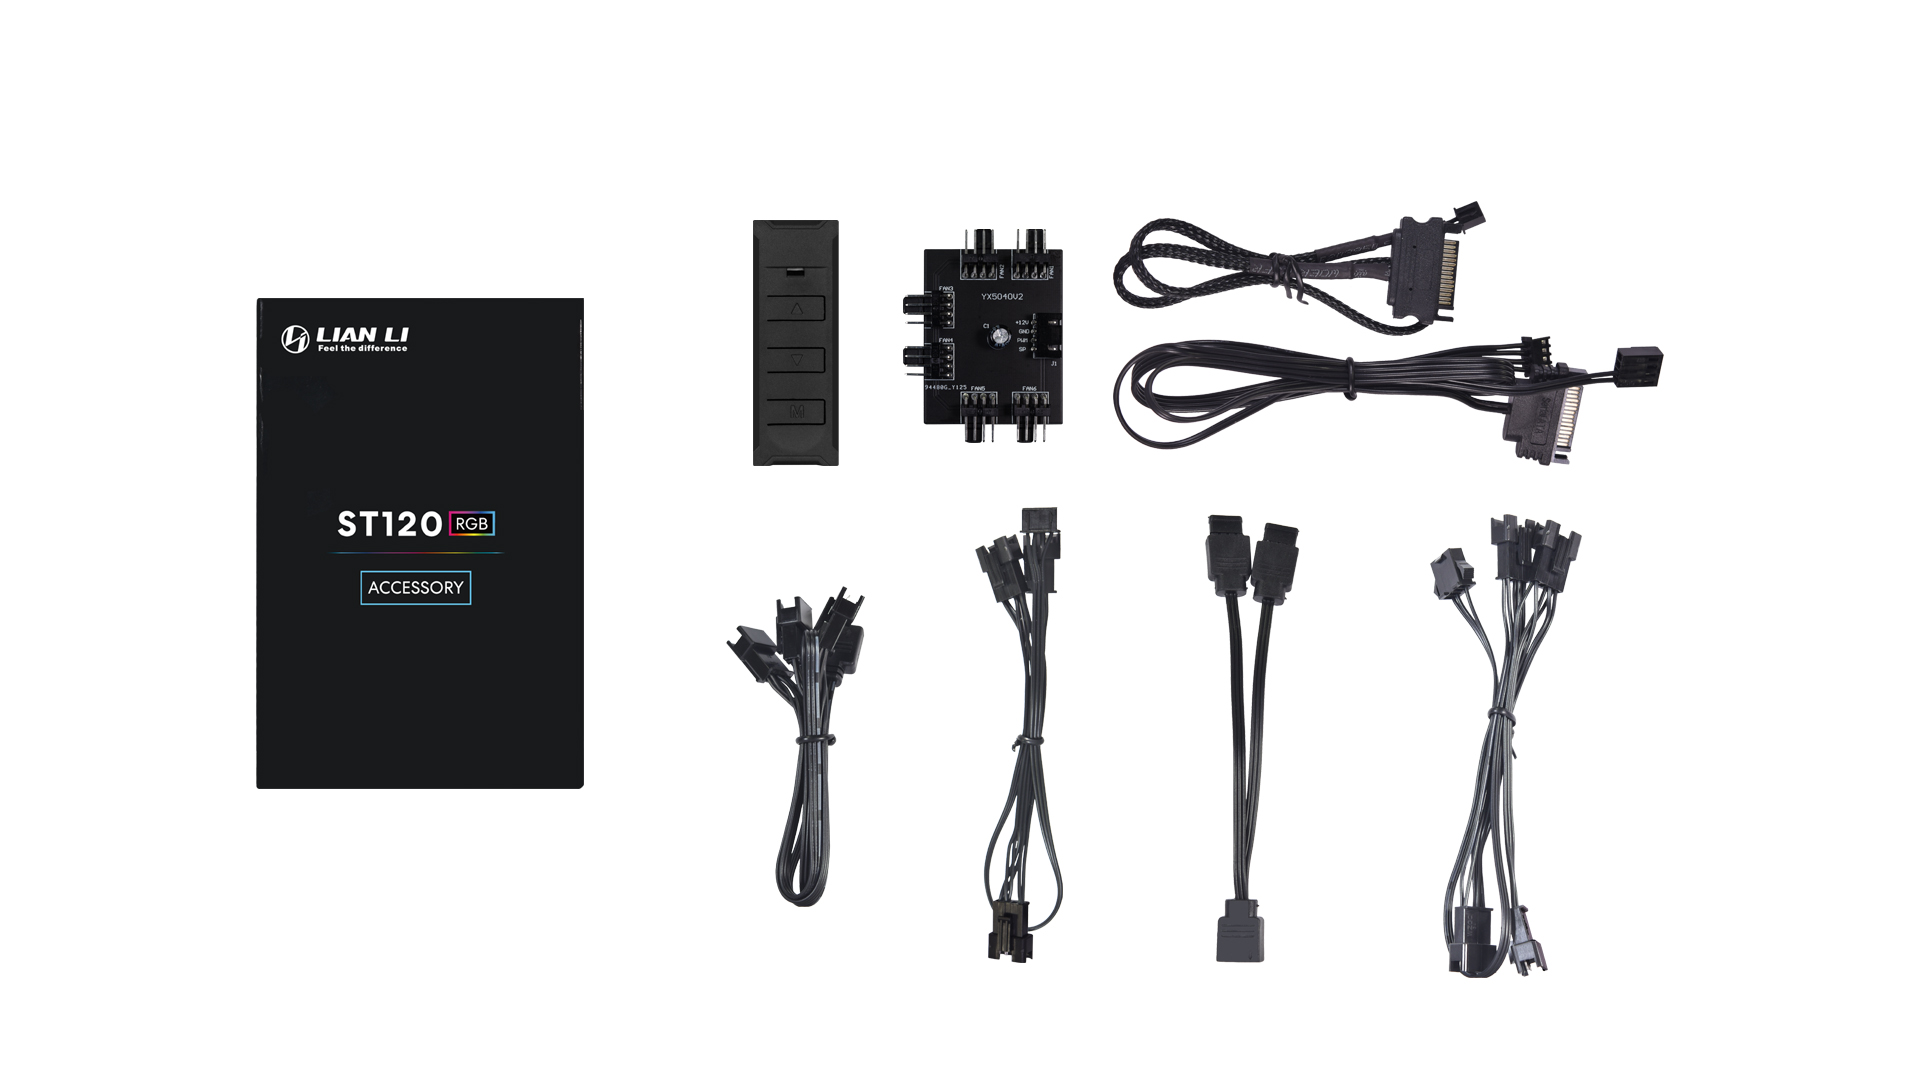 Lian Li ST120 RGB PWM 12cm 3pcs + controller Black